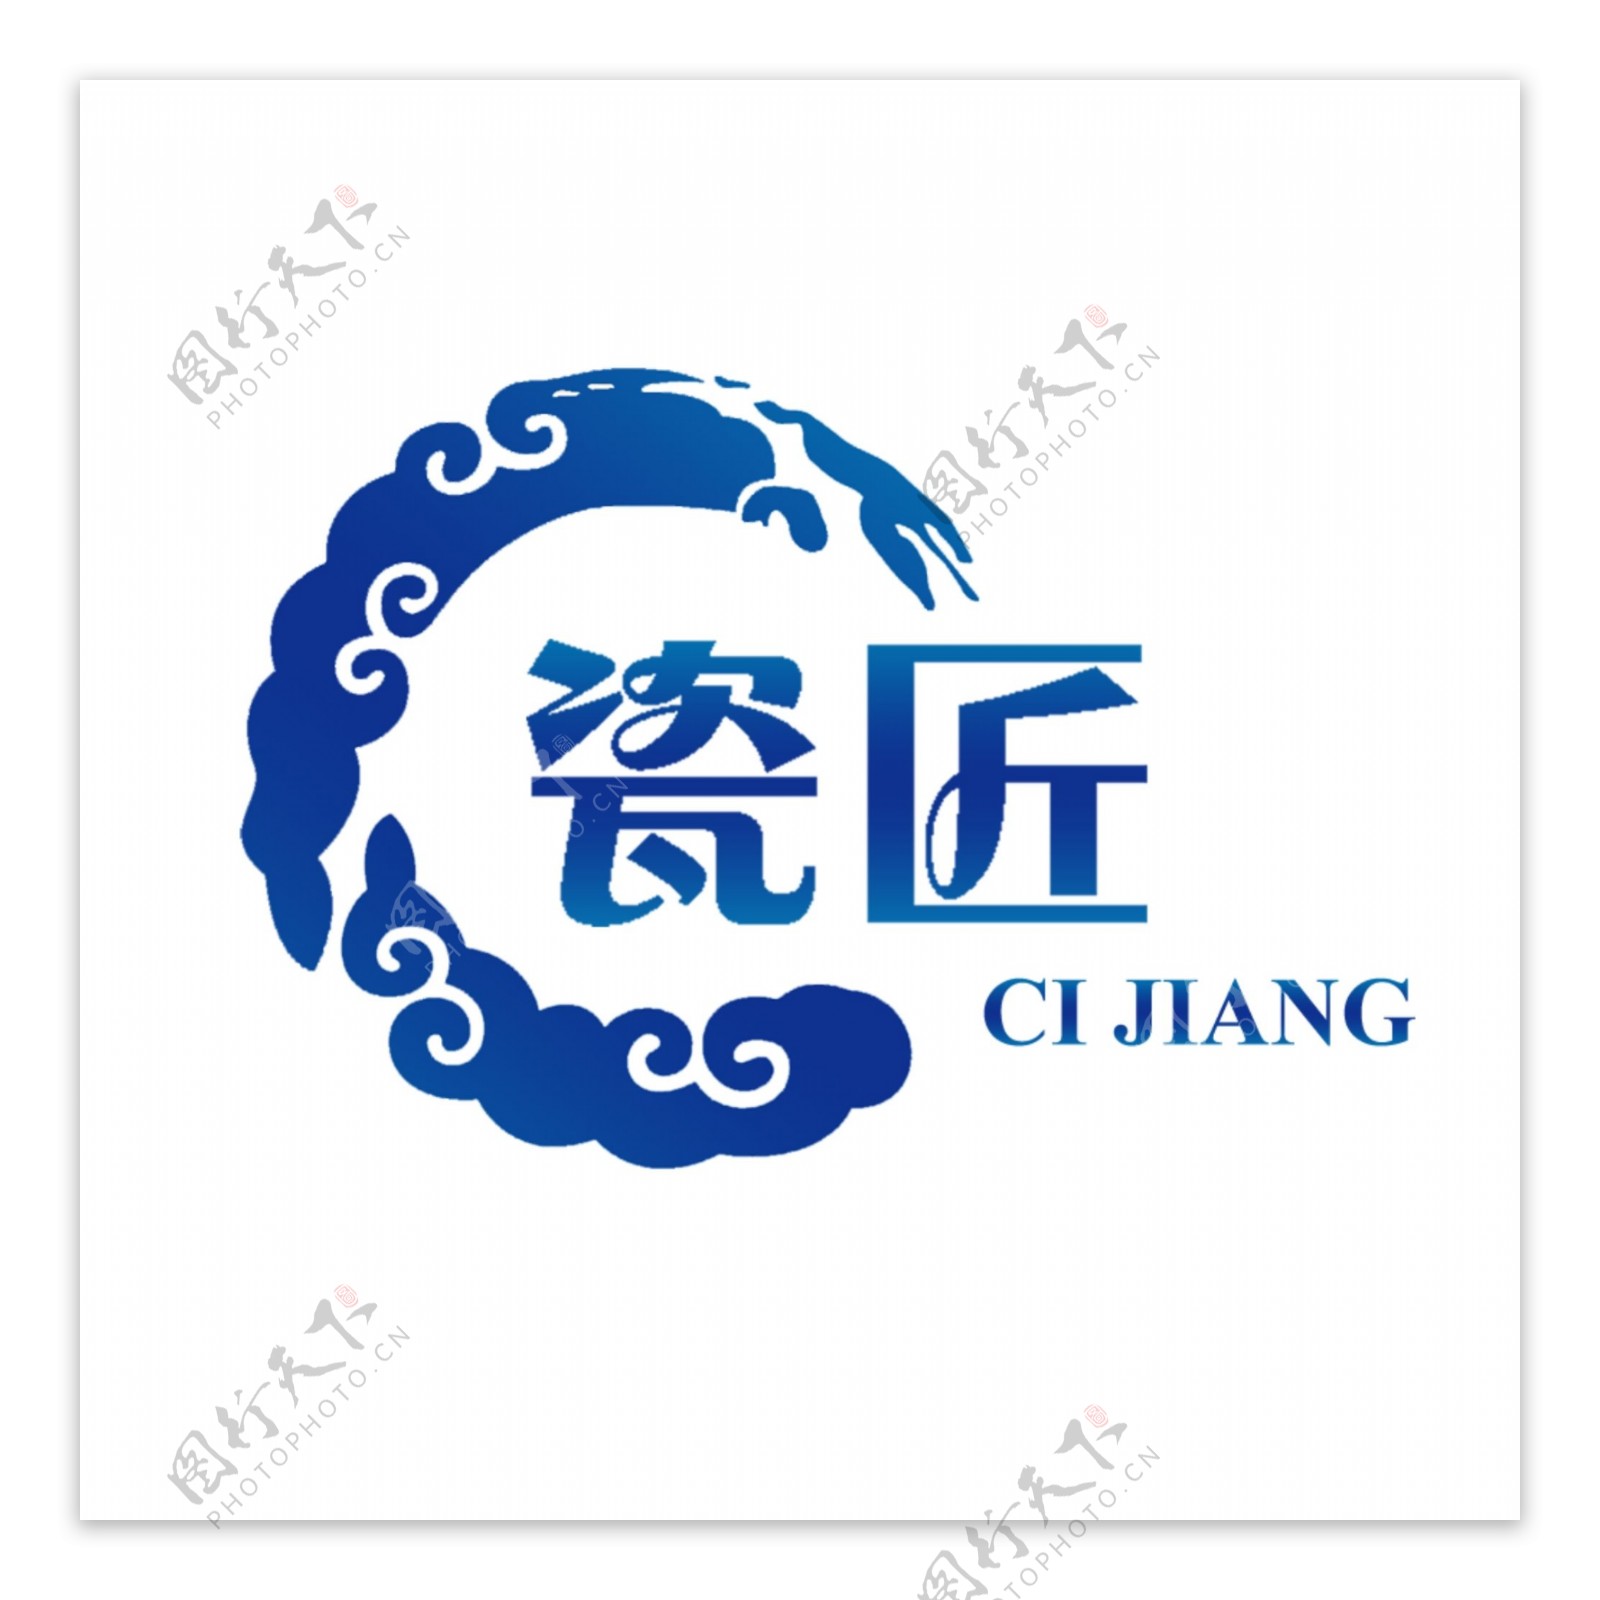 瓷匠陶瓷店标志logo